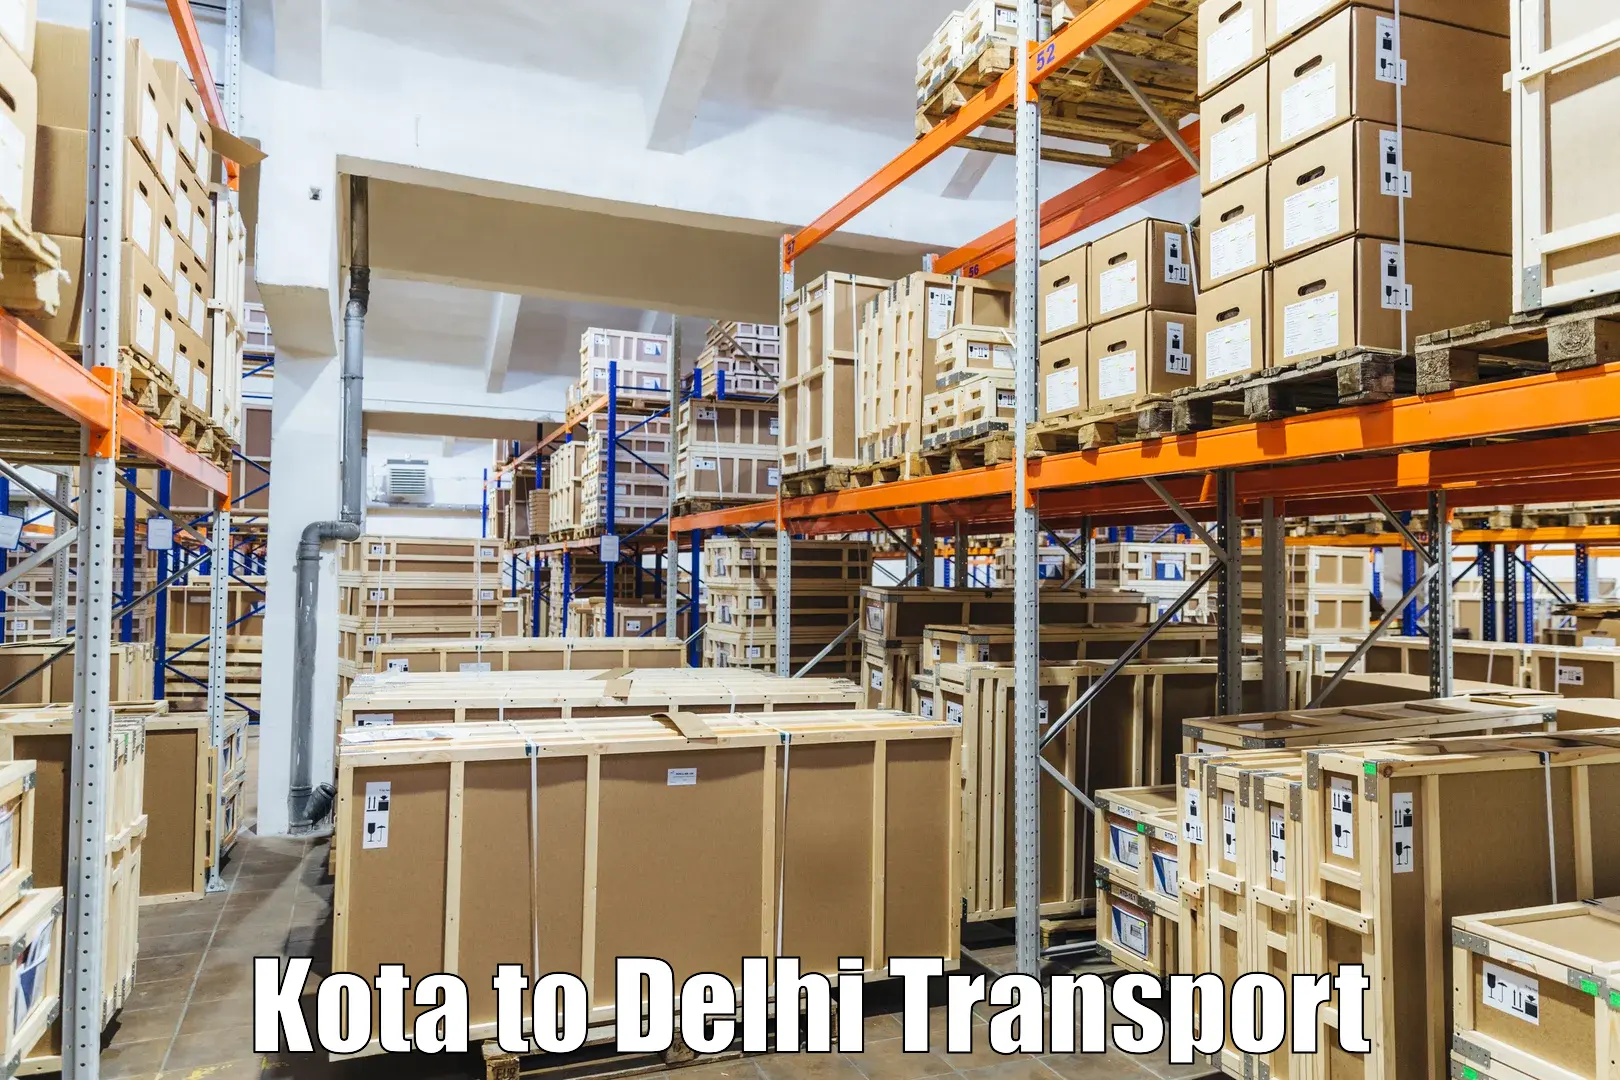 Online transport in Kota to IIT Delhi